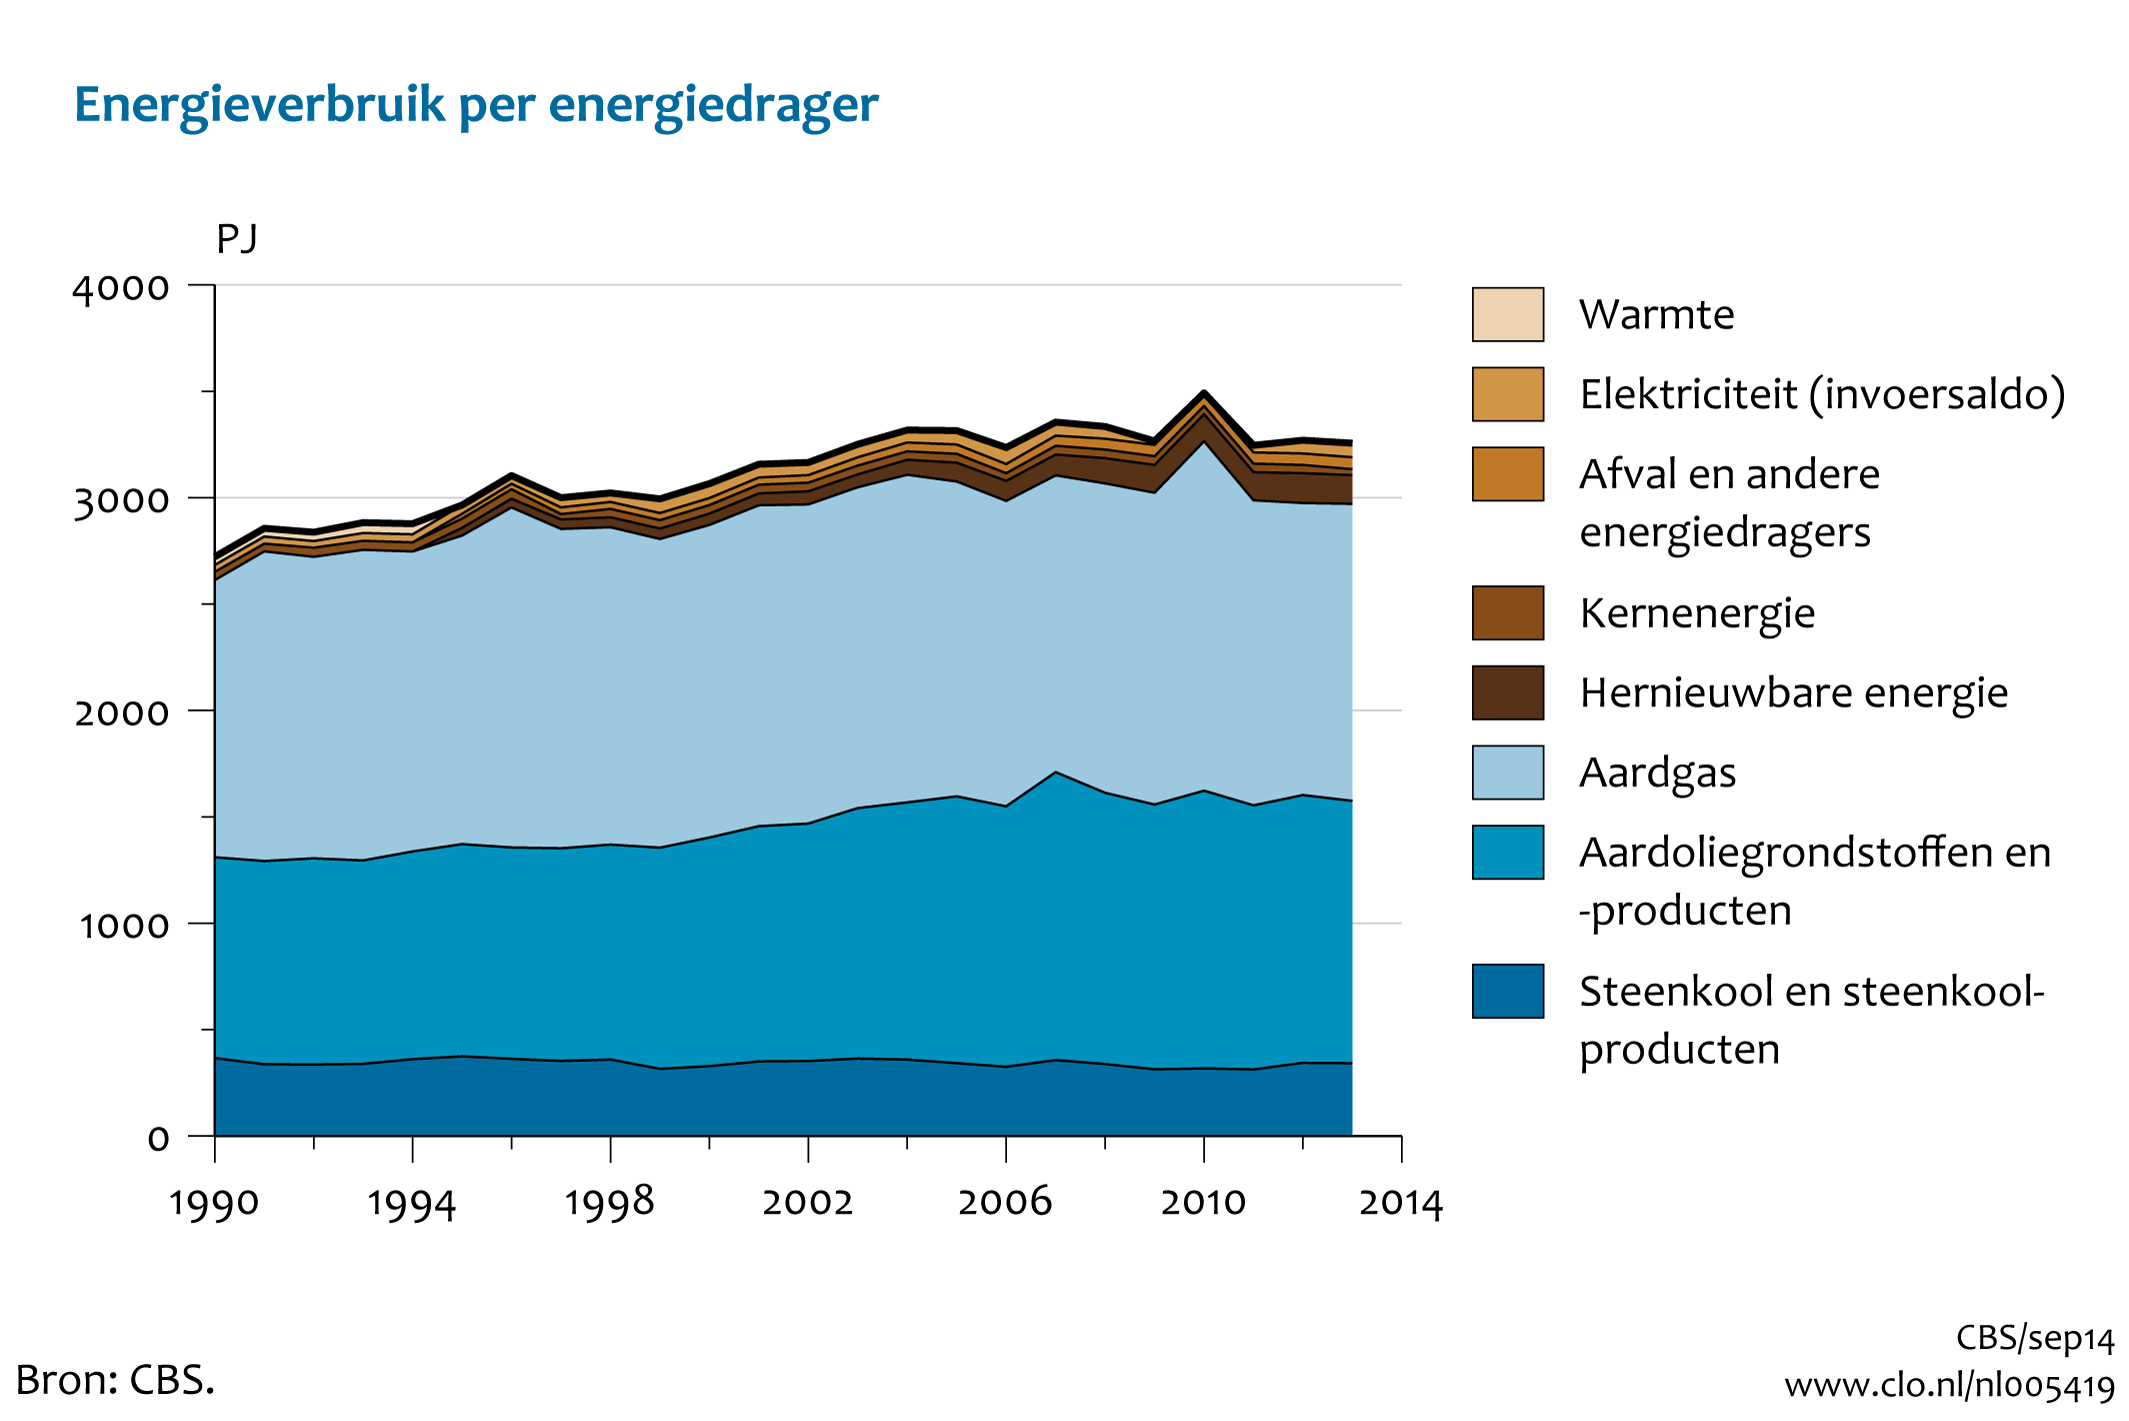 Figuur Energieverbruik per energiedrager 1990-2013**. In de rest van de tekst wordt deze figuur uitgebreider uitgelegd.